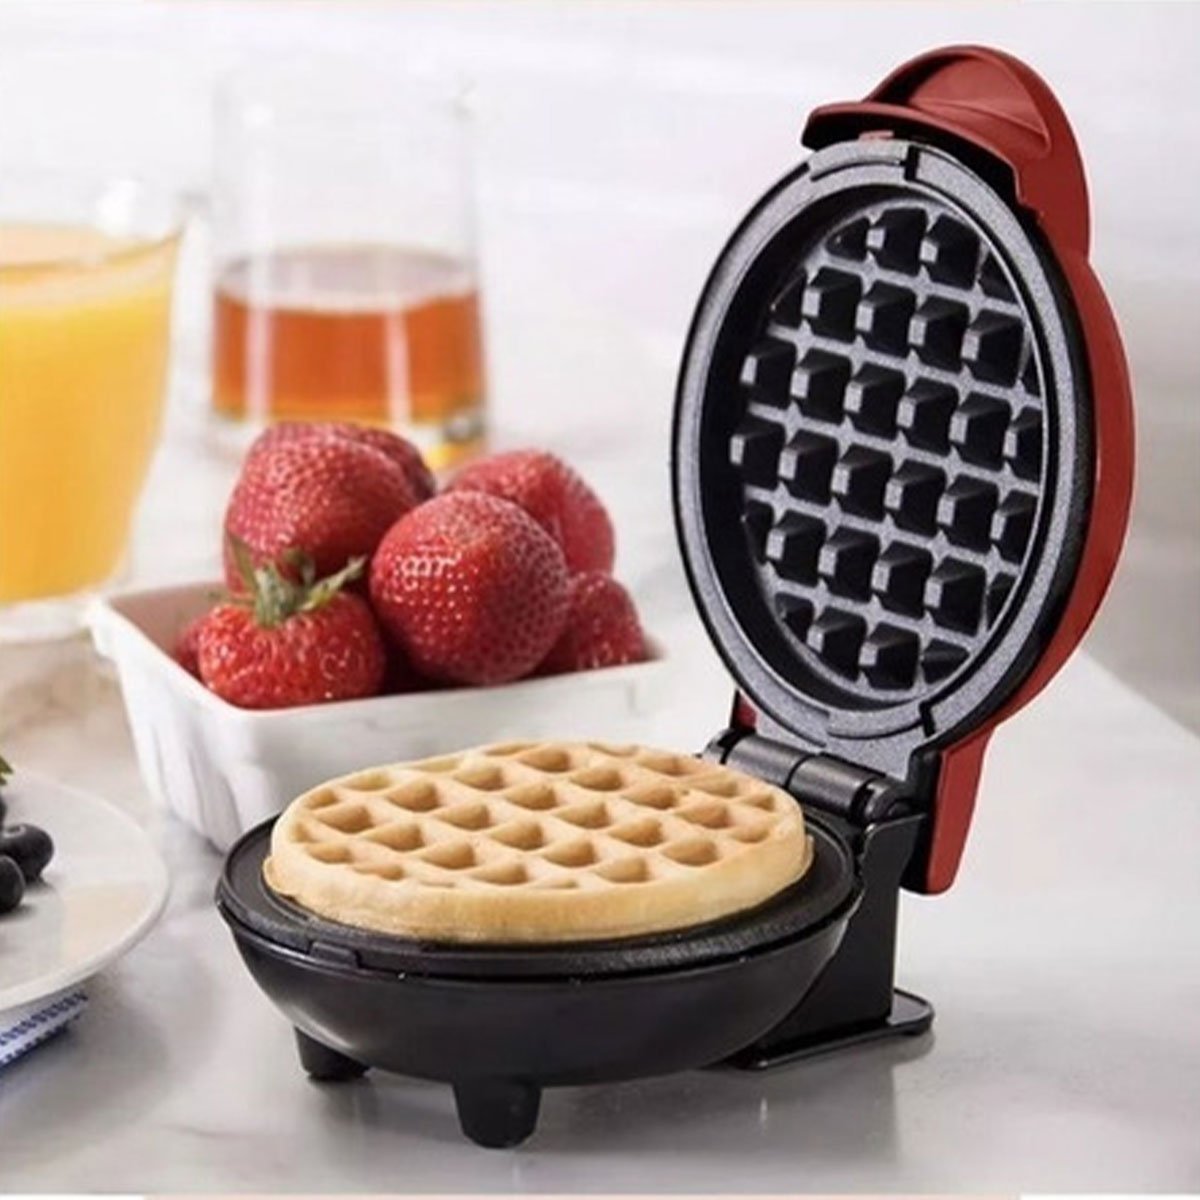 Mini Maquina de Waffles Cafe da Manha Panqueca Lanche Refeiçao Cozinha Portatil Placa Antiaderente A - 2